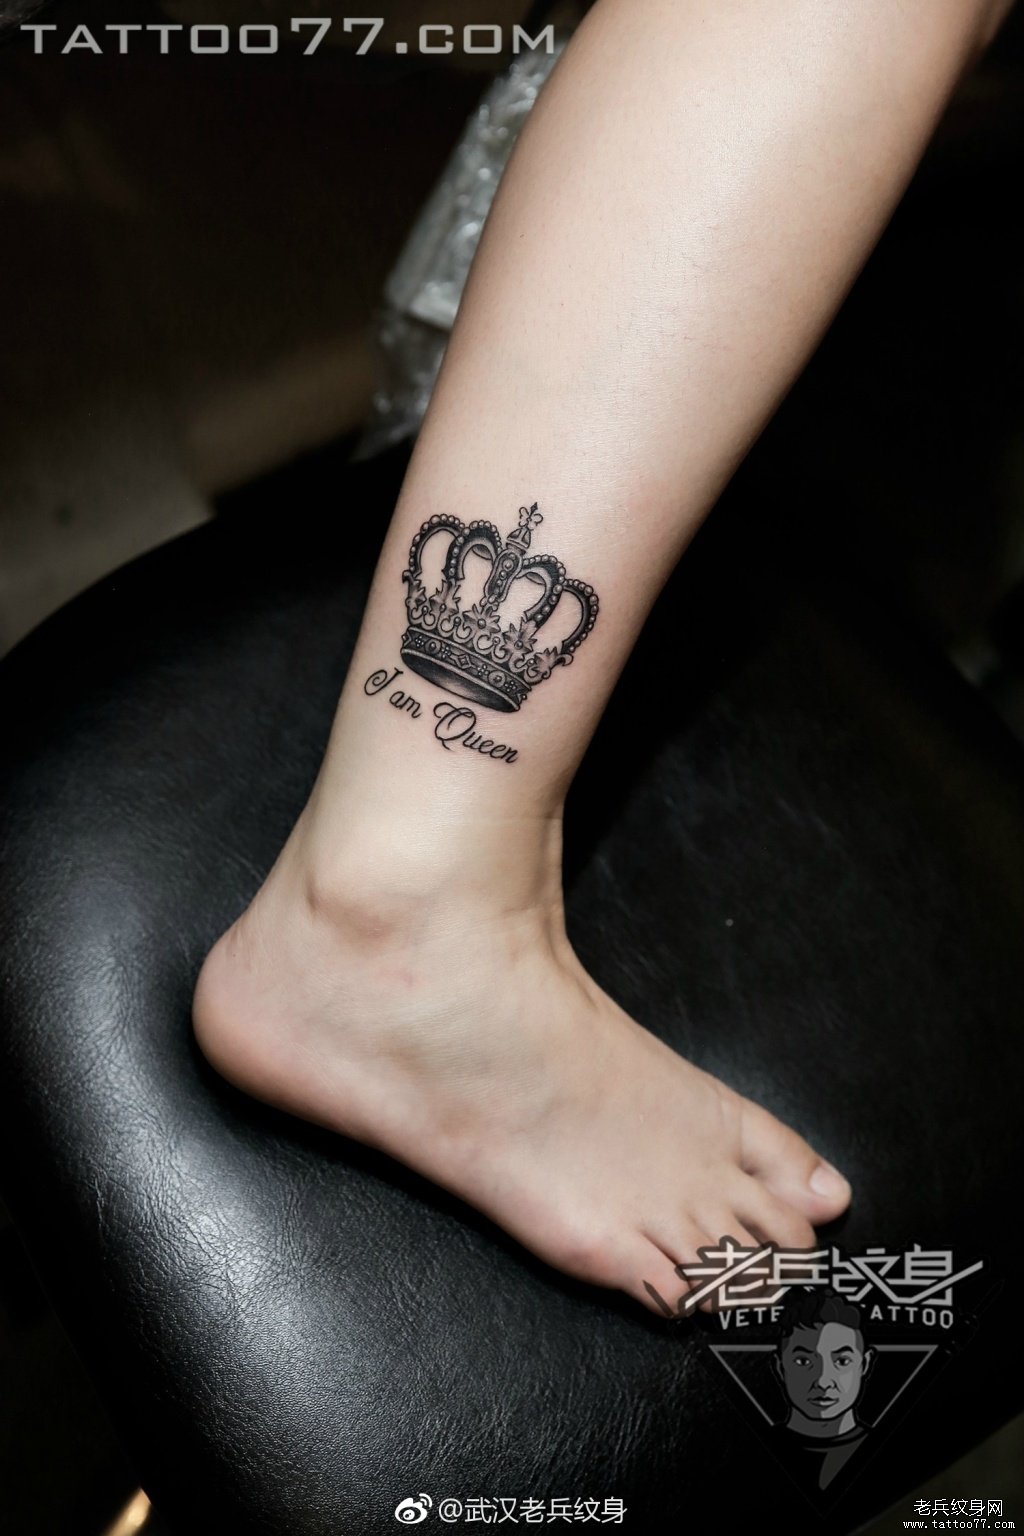 脚踝皇冠字母纹身图案作品